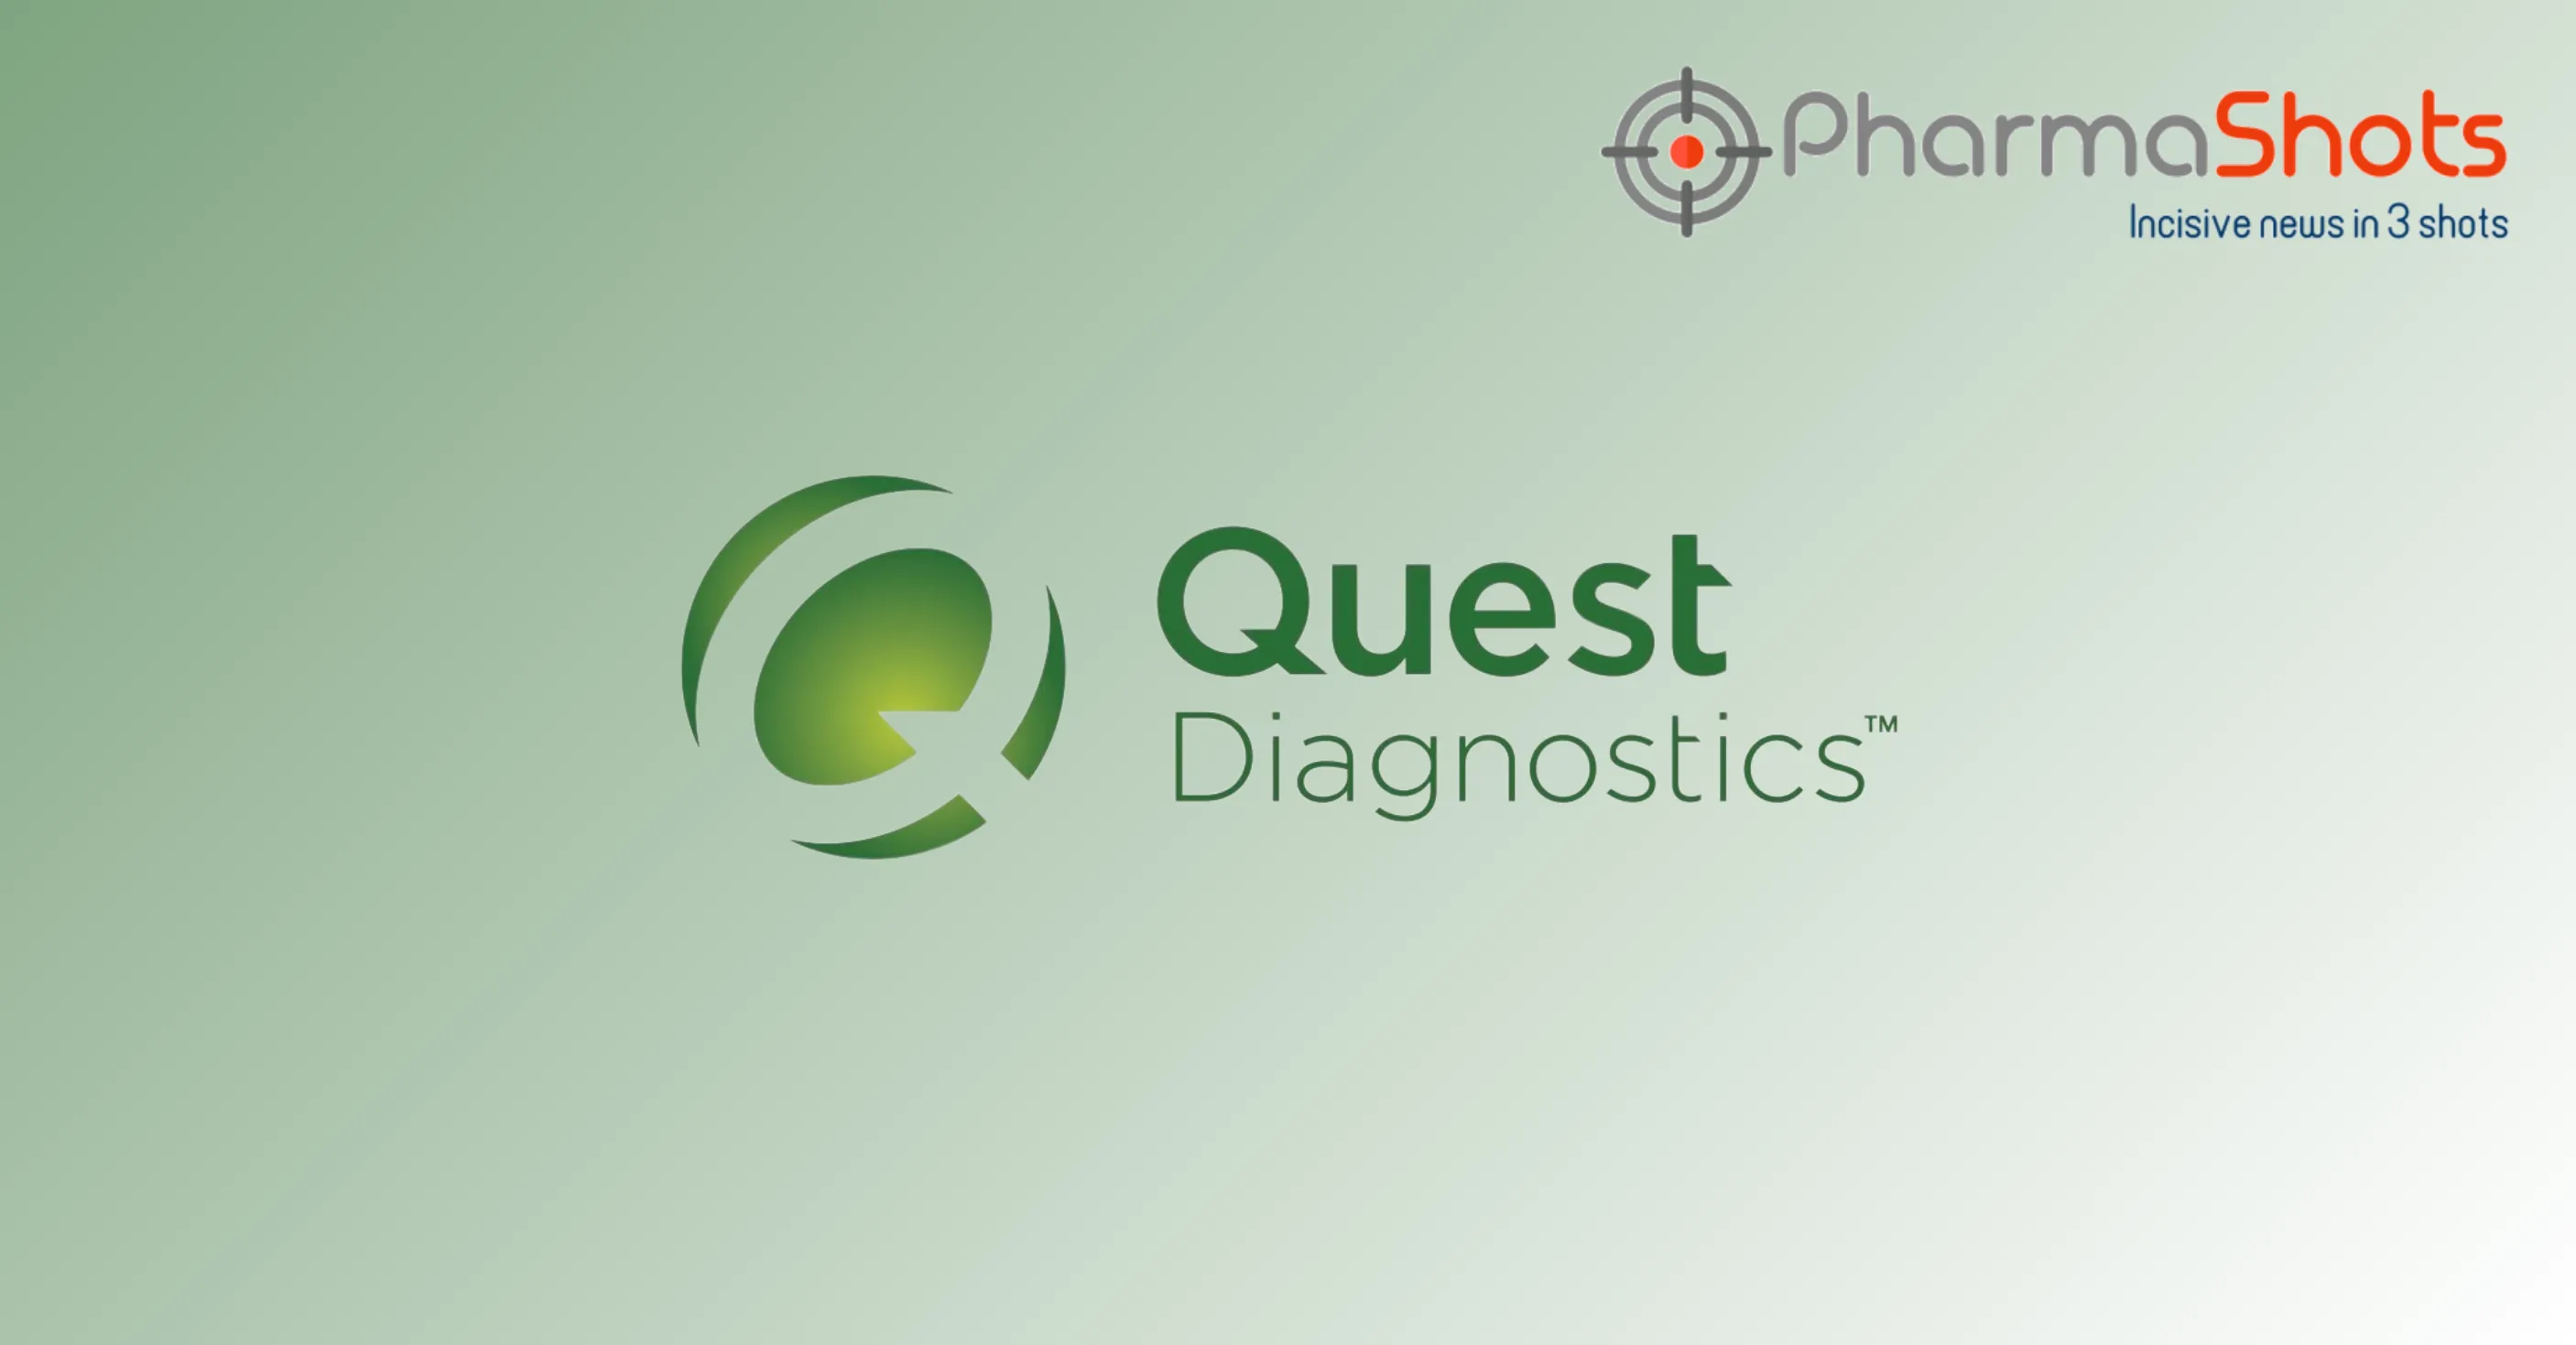 Quest Diagnostics Reports the Acquisition of PathAI Diagnostics to Enhance Cancer Diagnosis